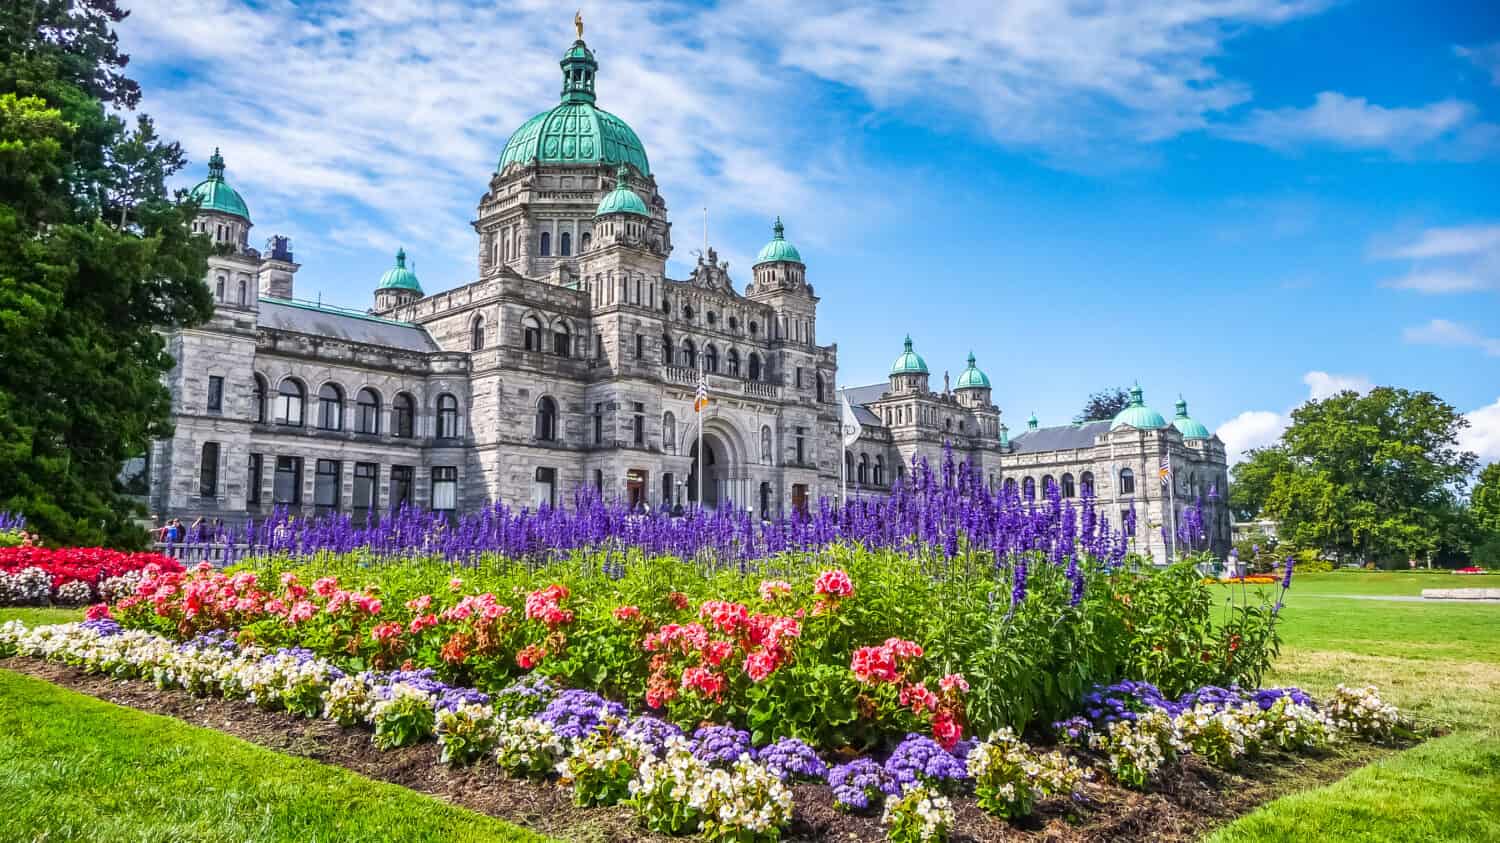 Bellissima vista dello storico edificio del parlamento nel centro di Victoria con fiori colorati in una giornata di sole, Isola di Vancouver, British Columbia, Canada